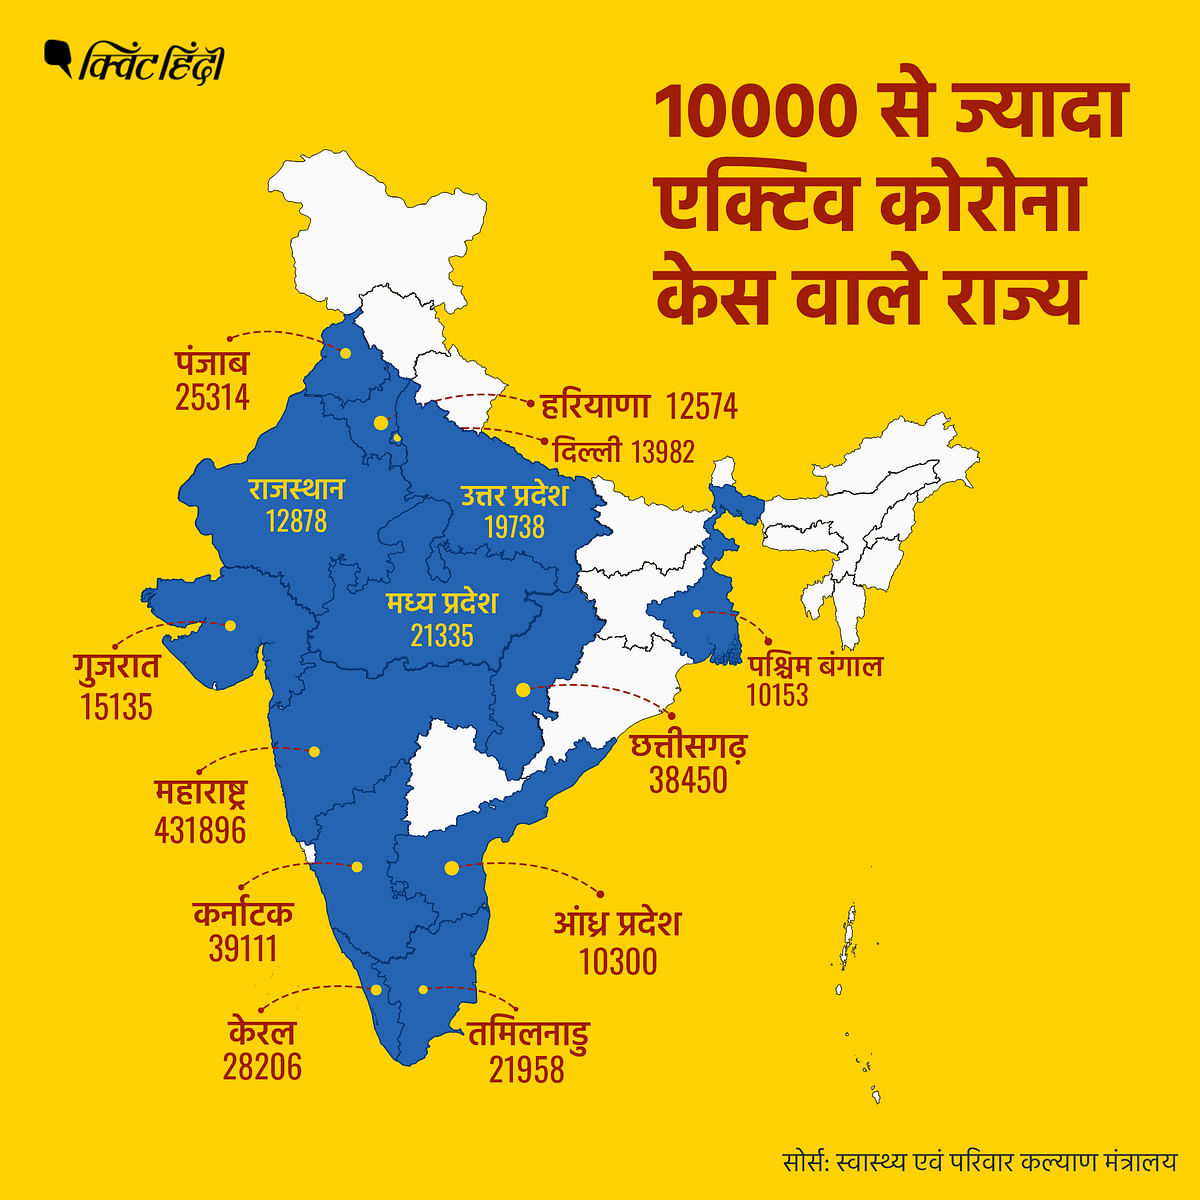 भारत में कोरोना के कुल मामलों की संख्या सवा करोड़ से ज्यादा हो चुकी है.